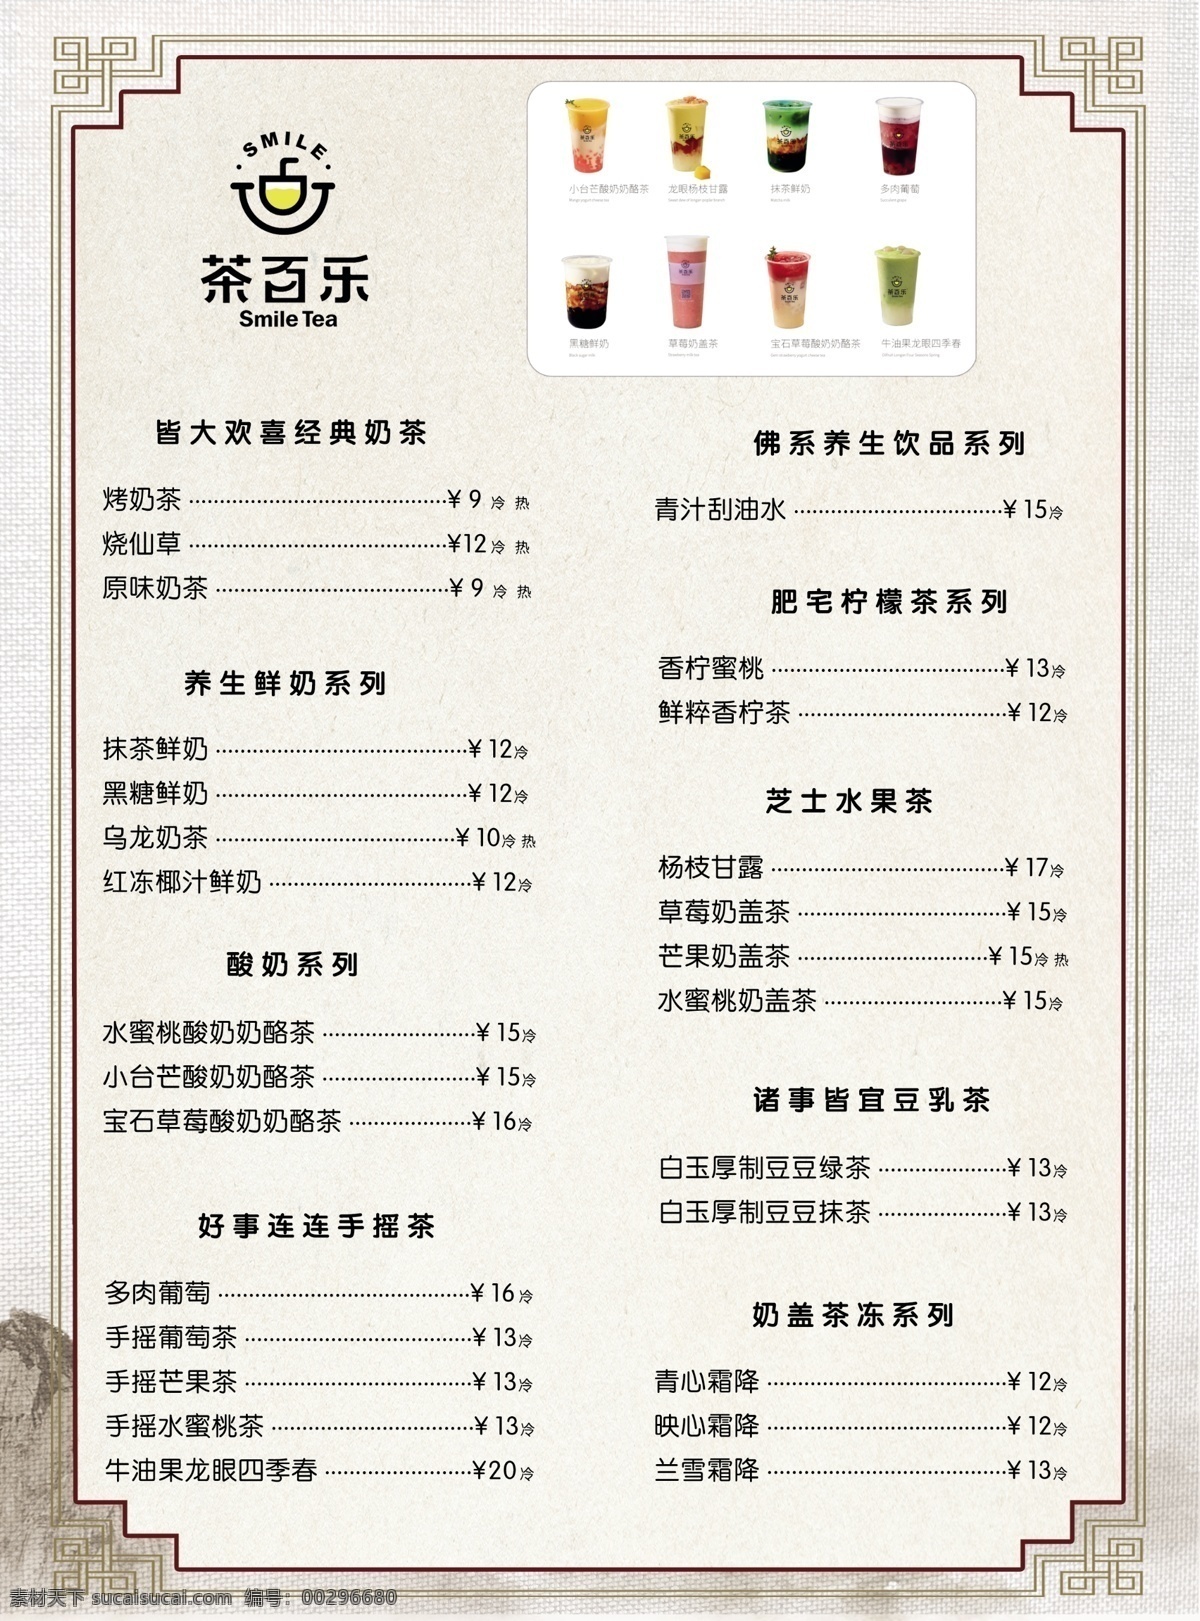 茶百乐 茶 菜单 价格表 奶茶 菜单菜谱